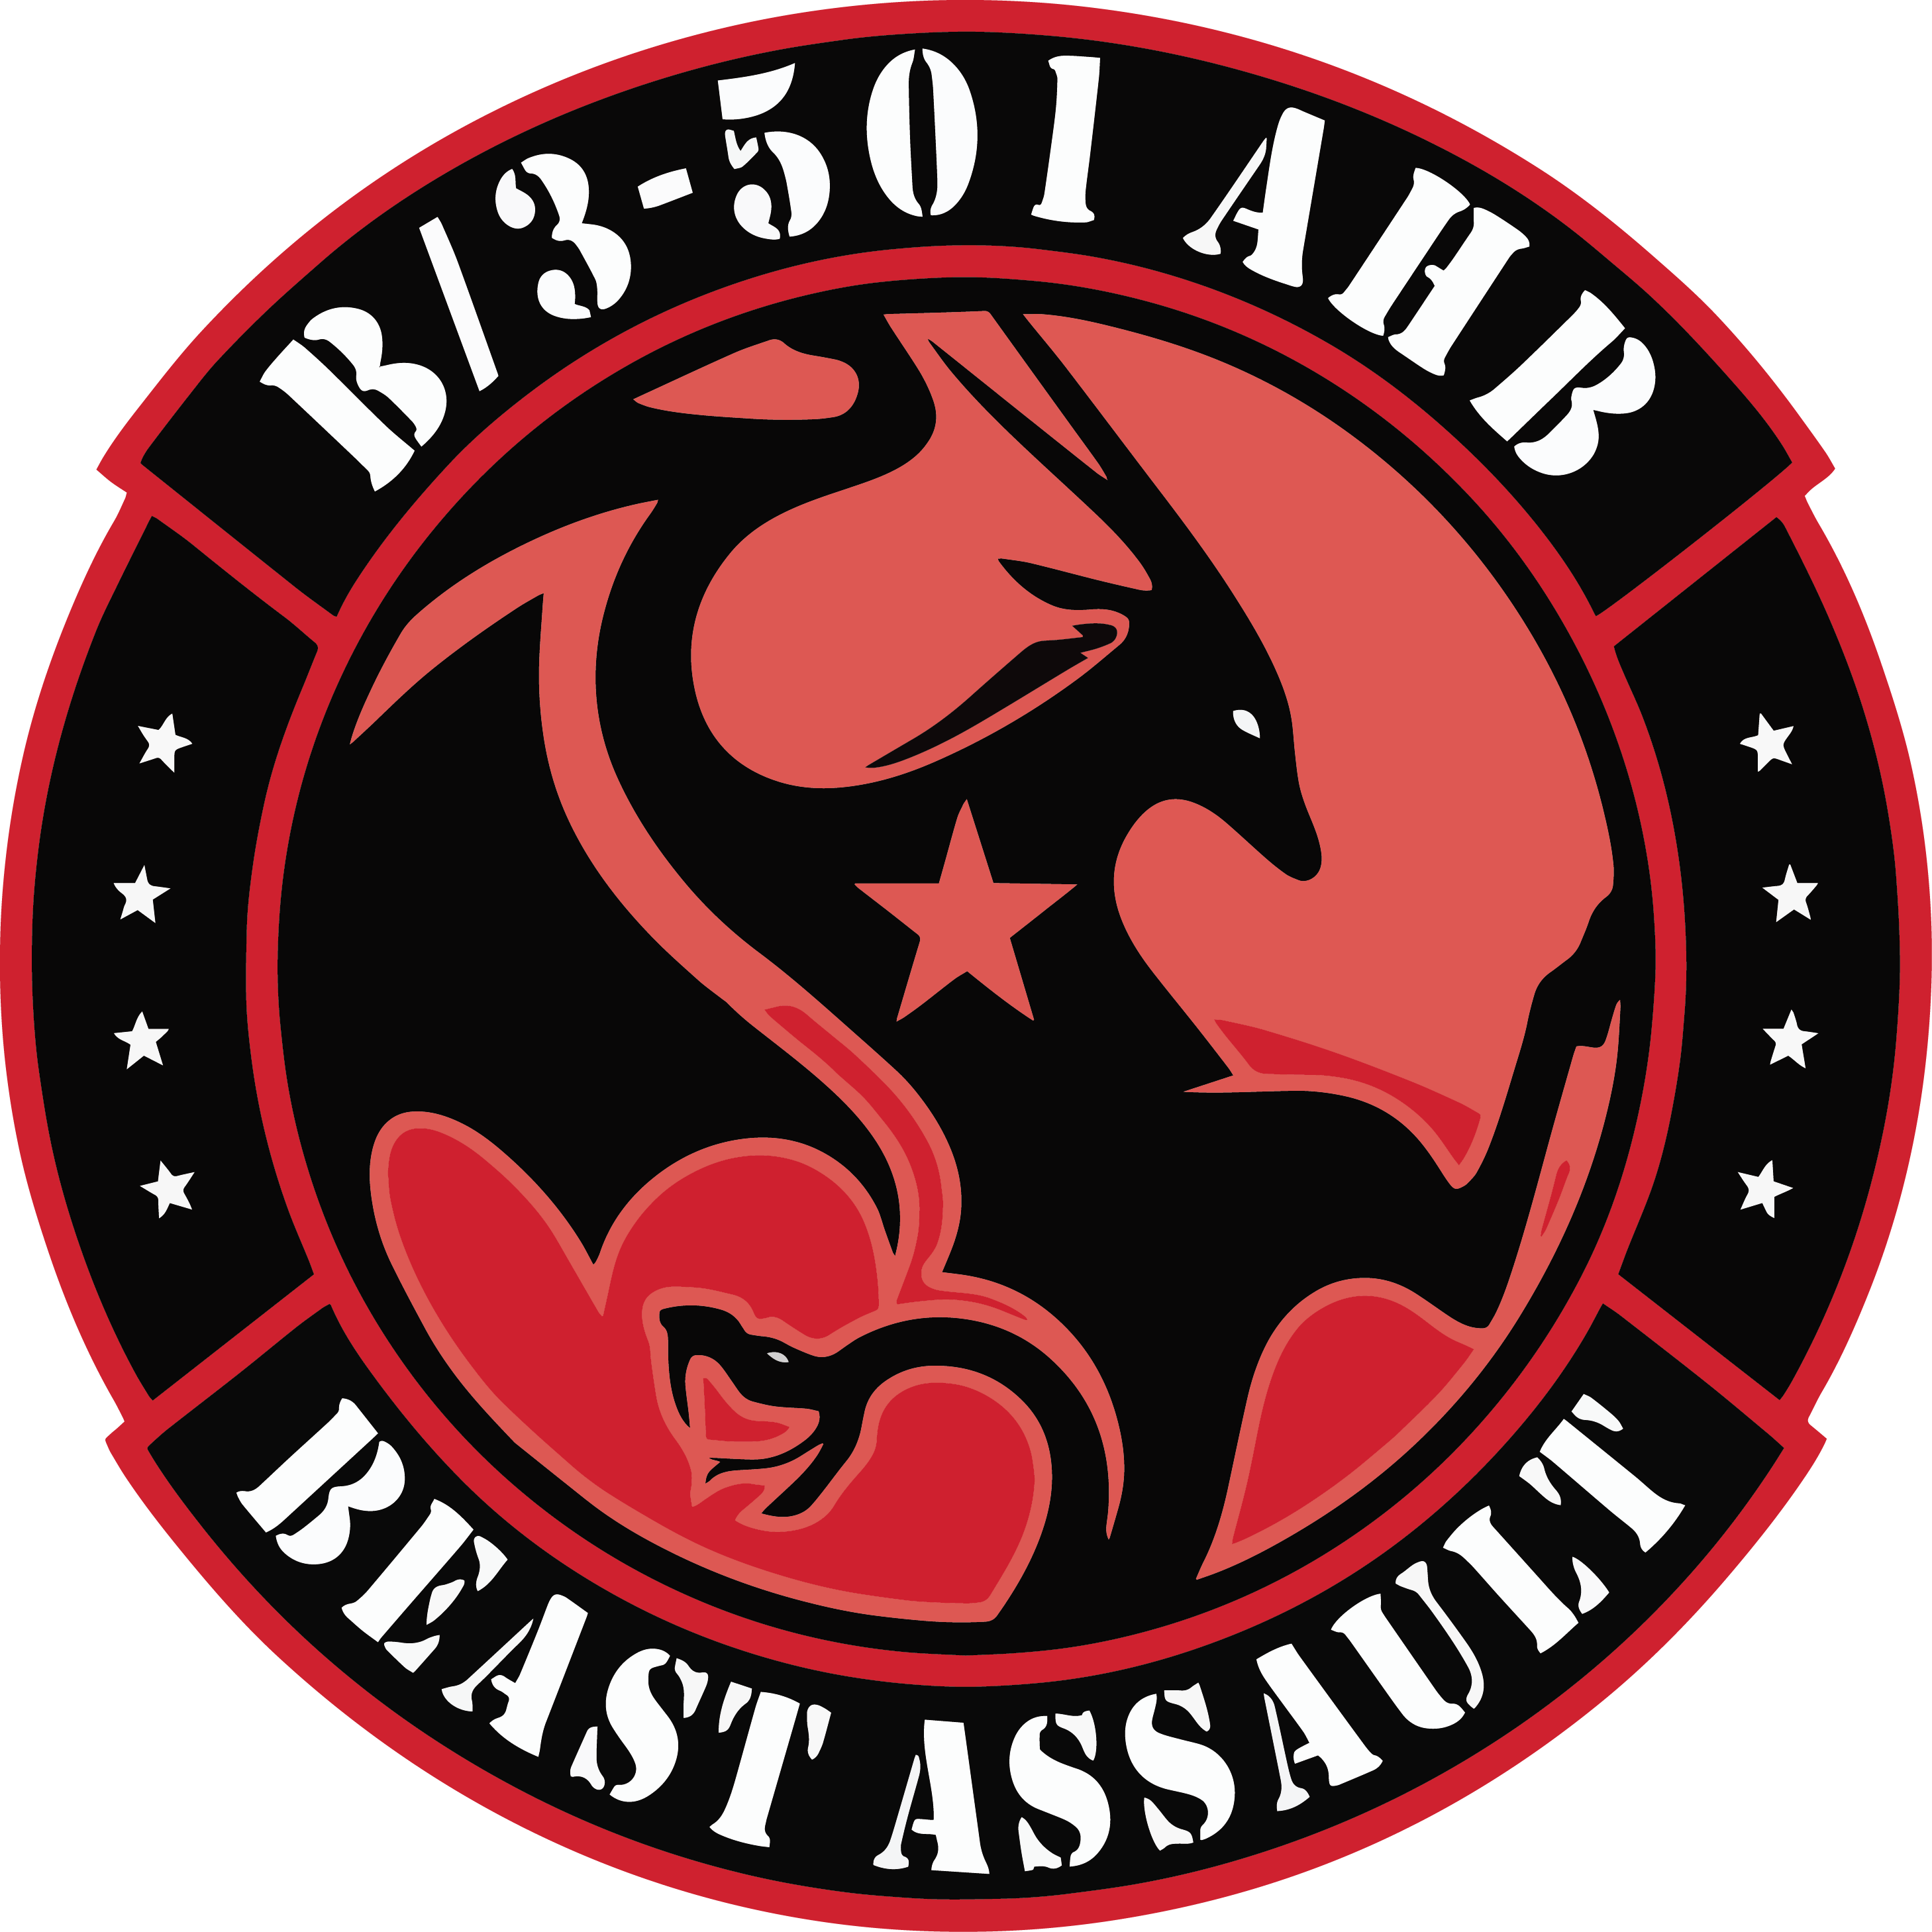 B Co, 3-501 AHB "Beast Assault"